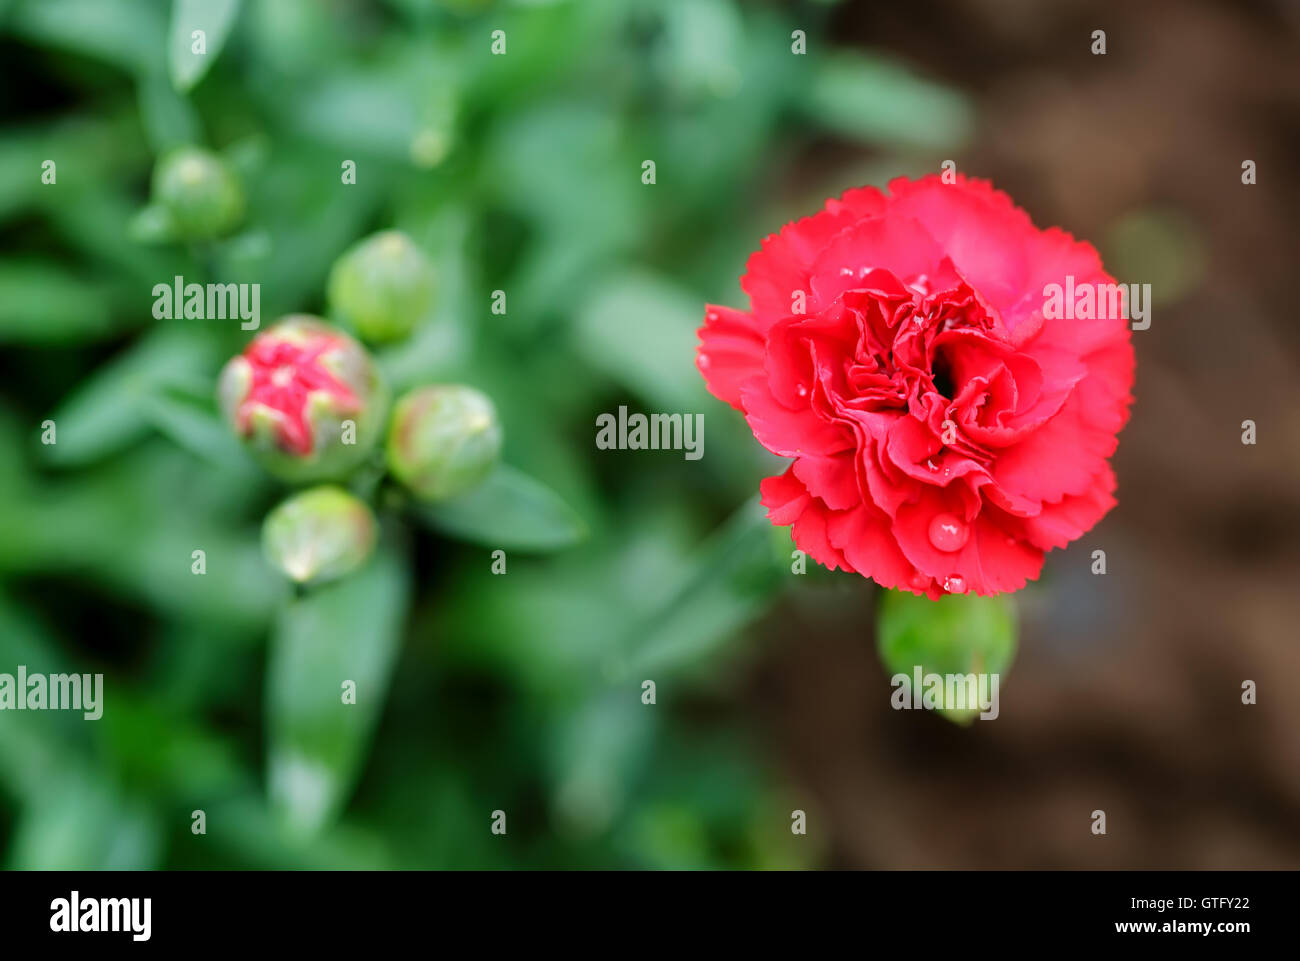 Carnation flower Stock Photo